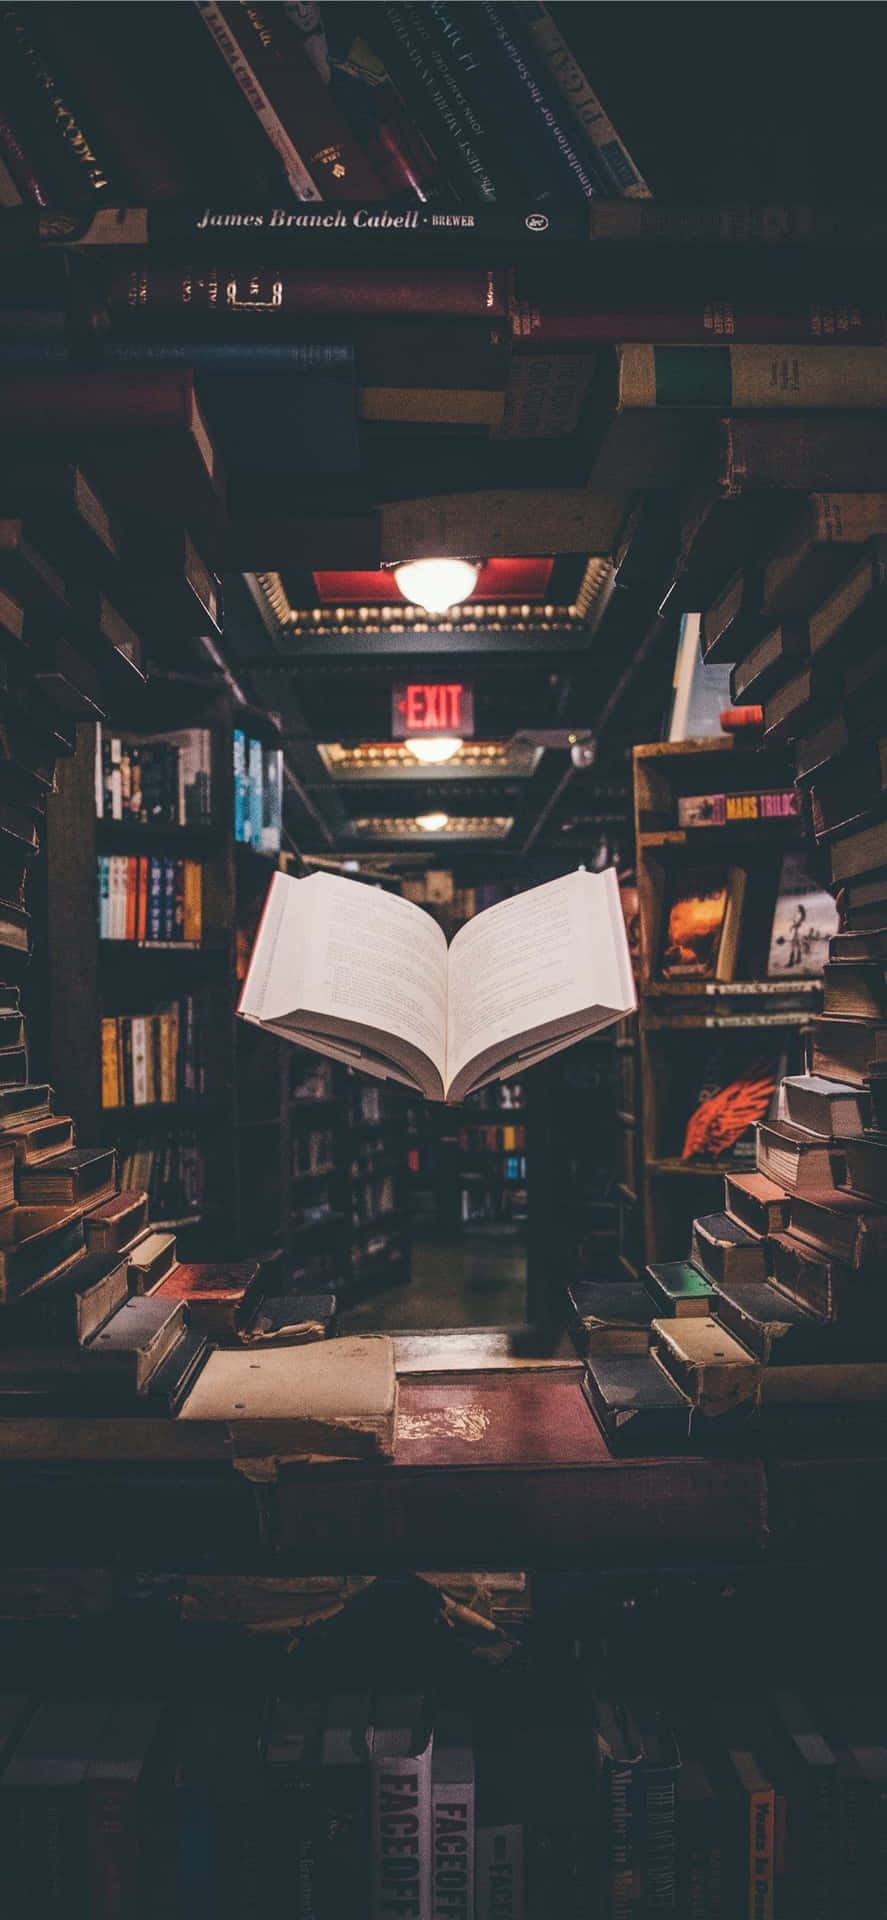 En åben bog på en hylde i en boghandel Wallpaper